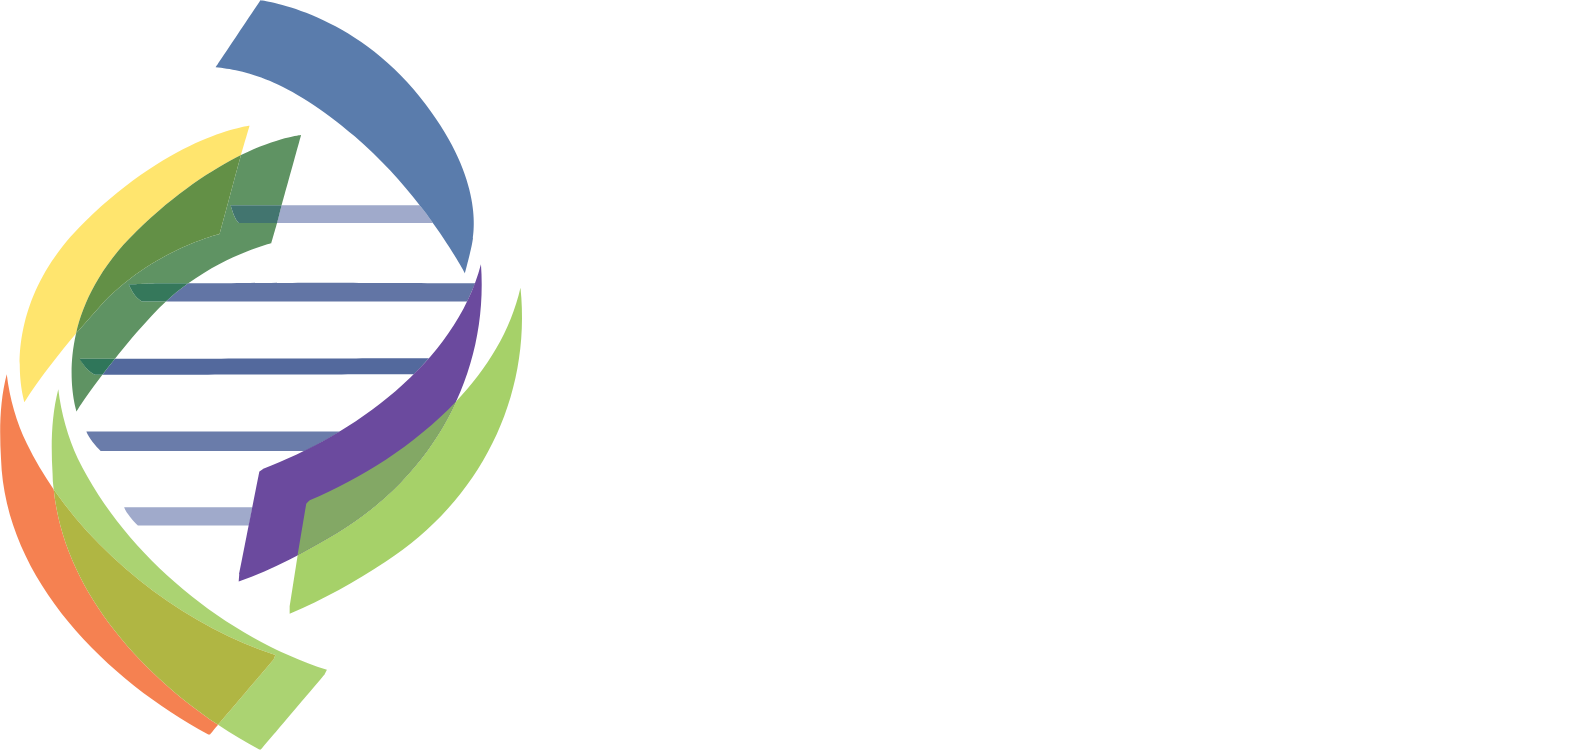 Enzo Biochem logo grand pour les fonds sombres (PNG transparent)